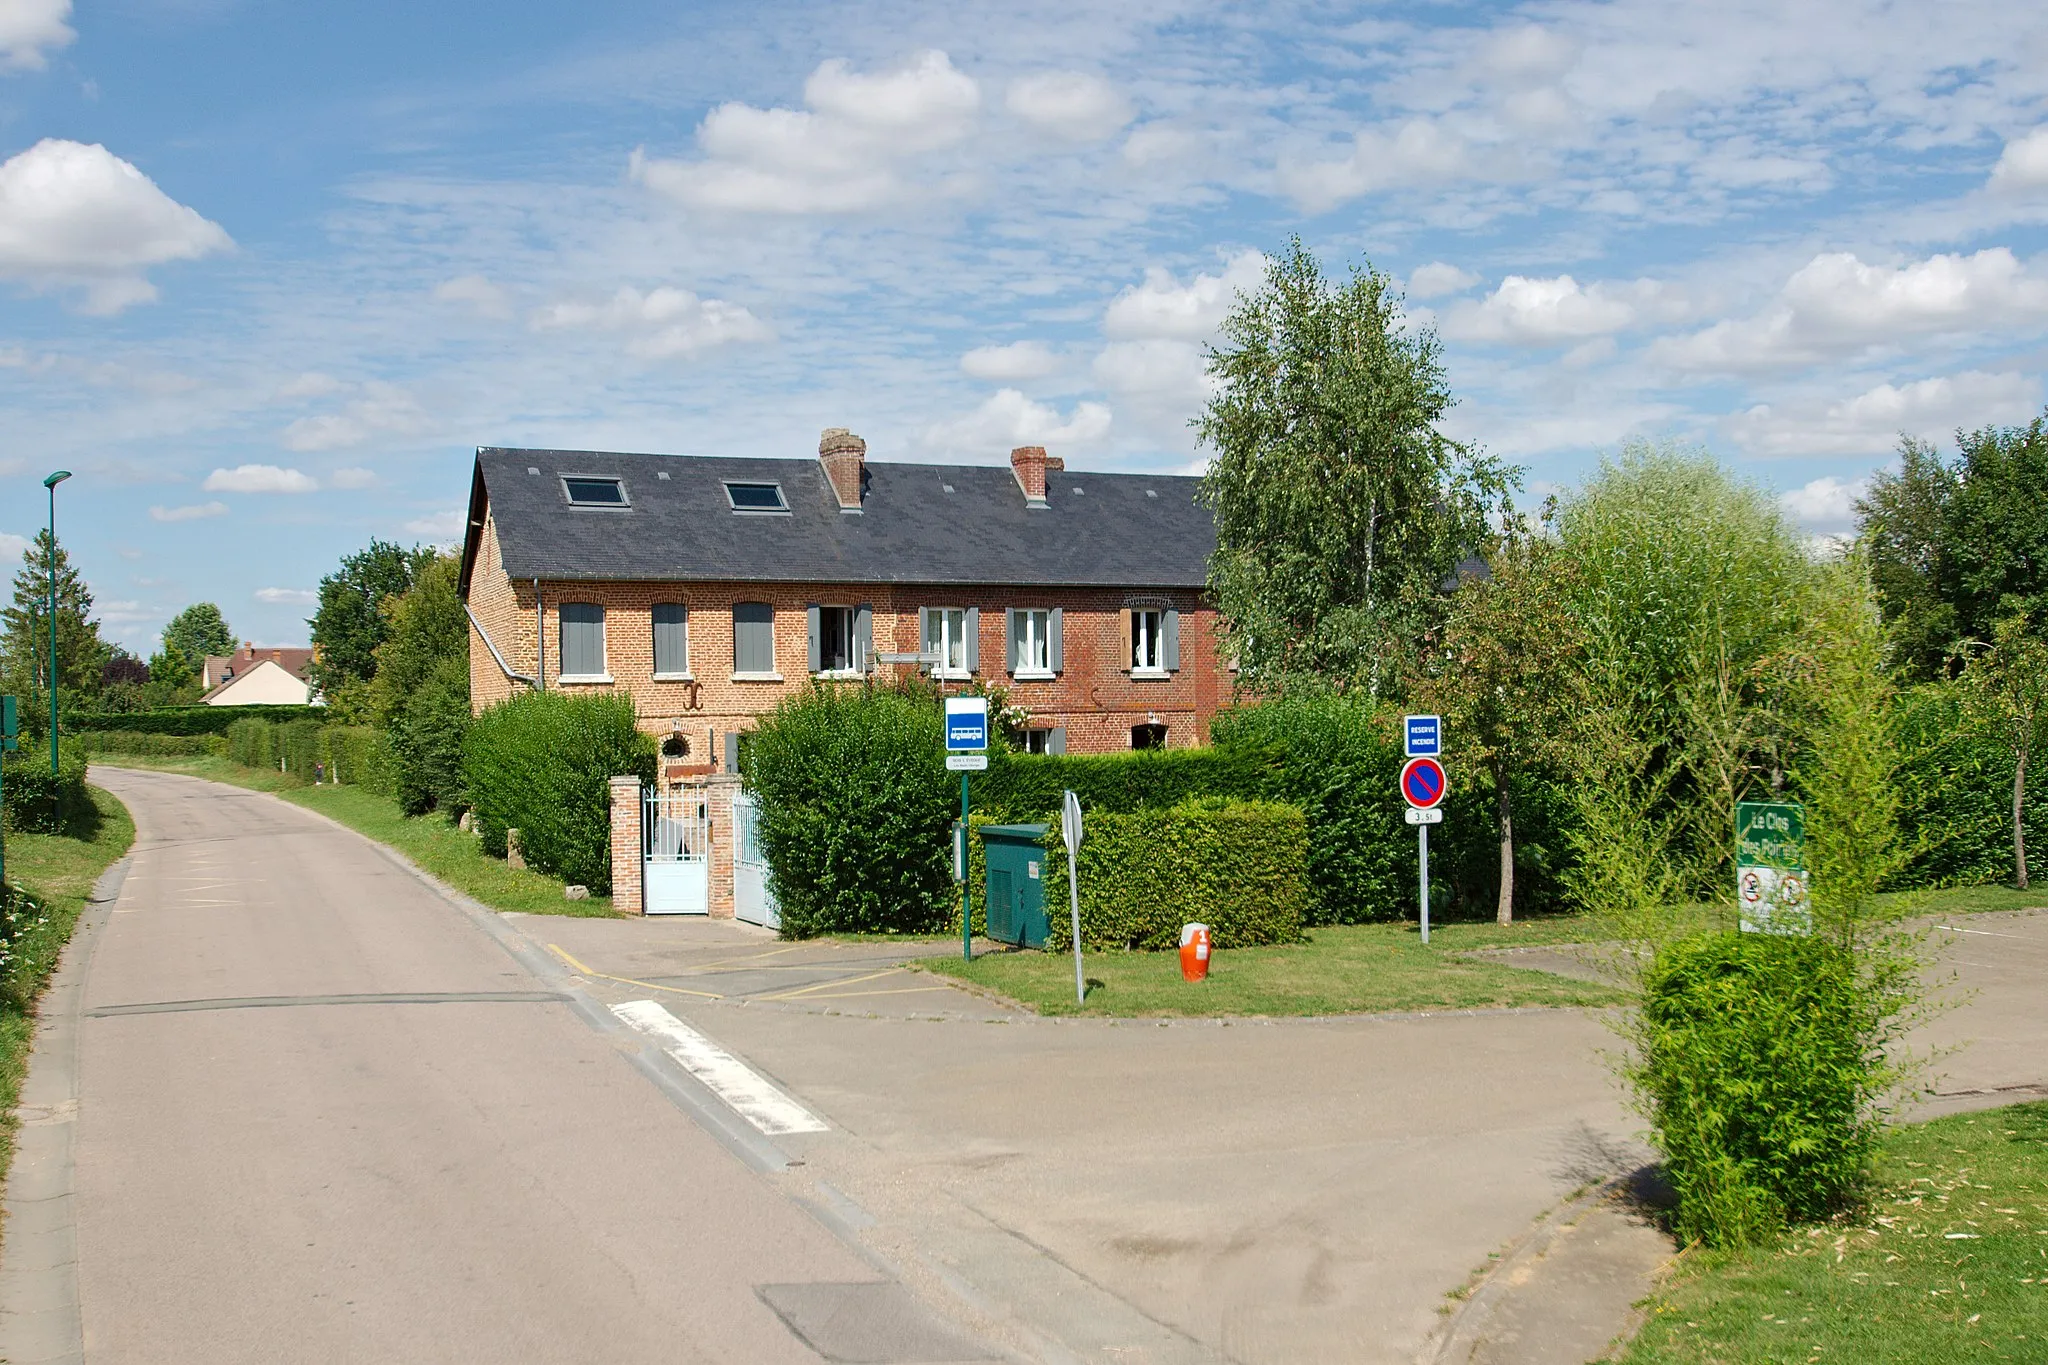 Photo showing: Maison en brique rose du 18e siècle rue Principale à Bois-l’Évêque